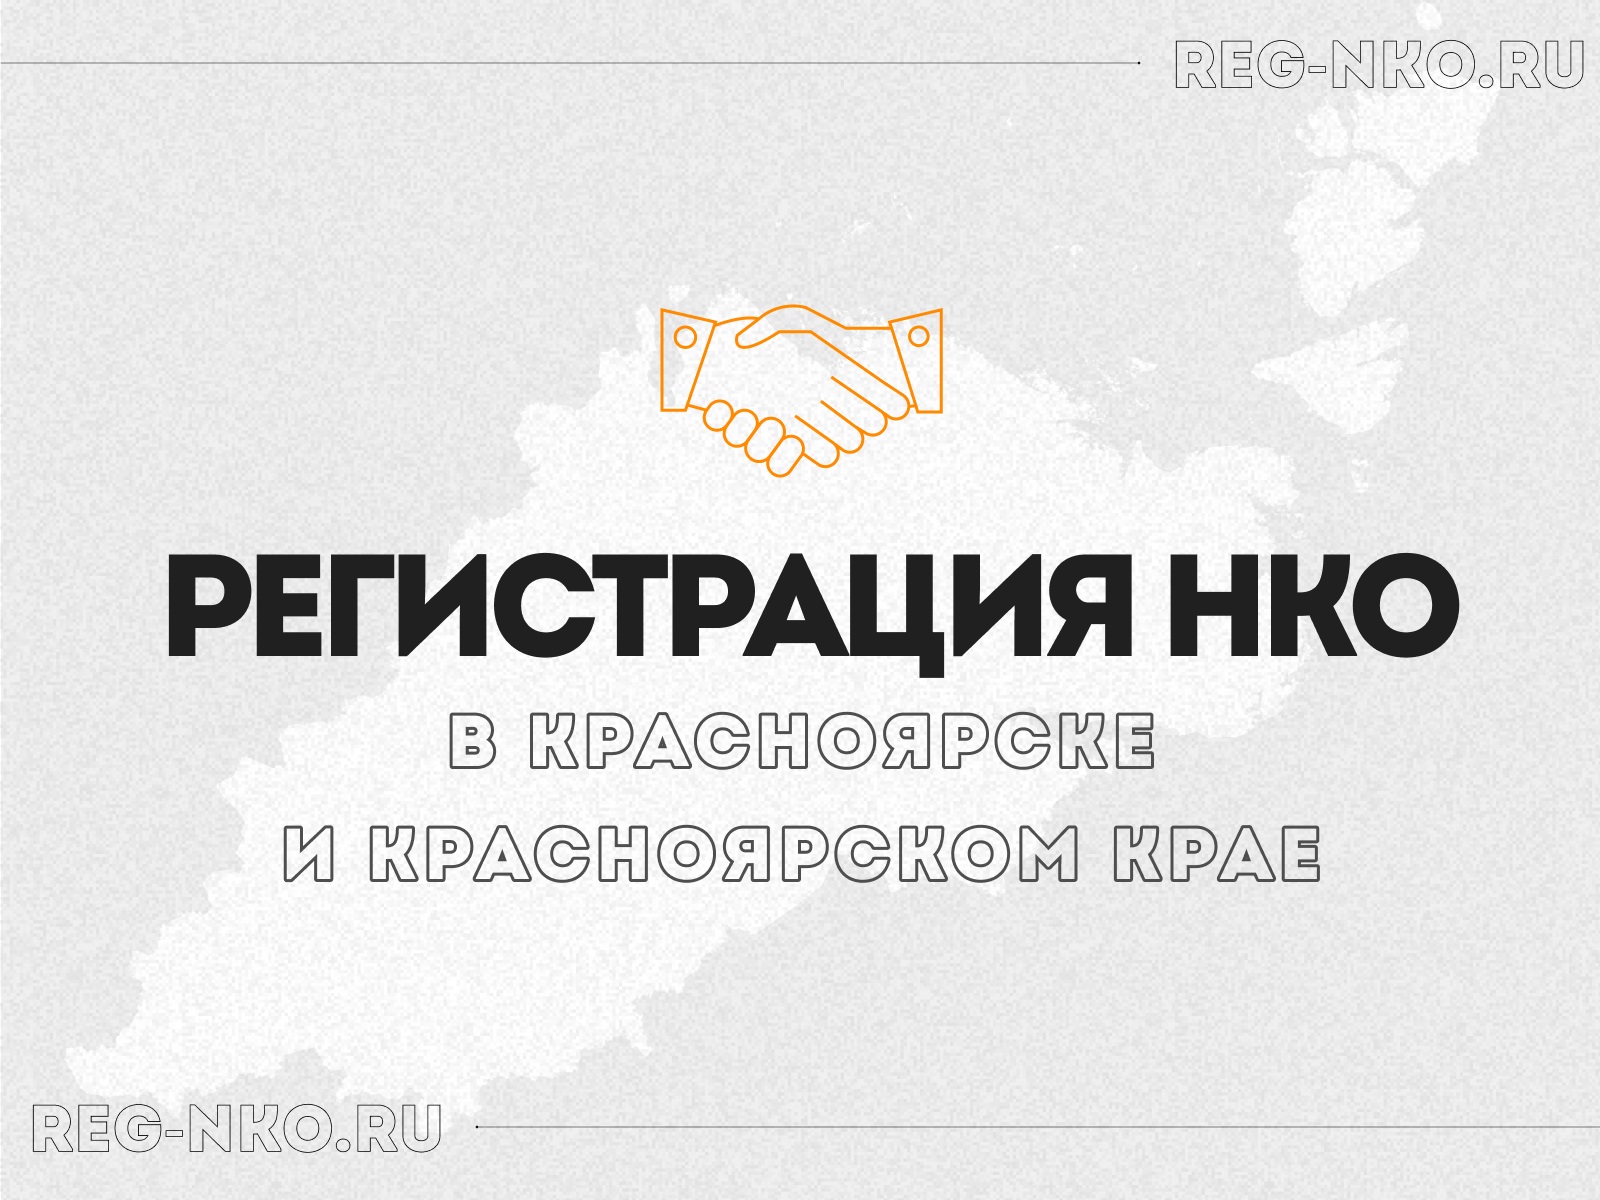 Регистрация НКО в Красноярске и Красноярском крае